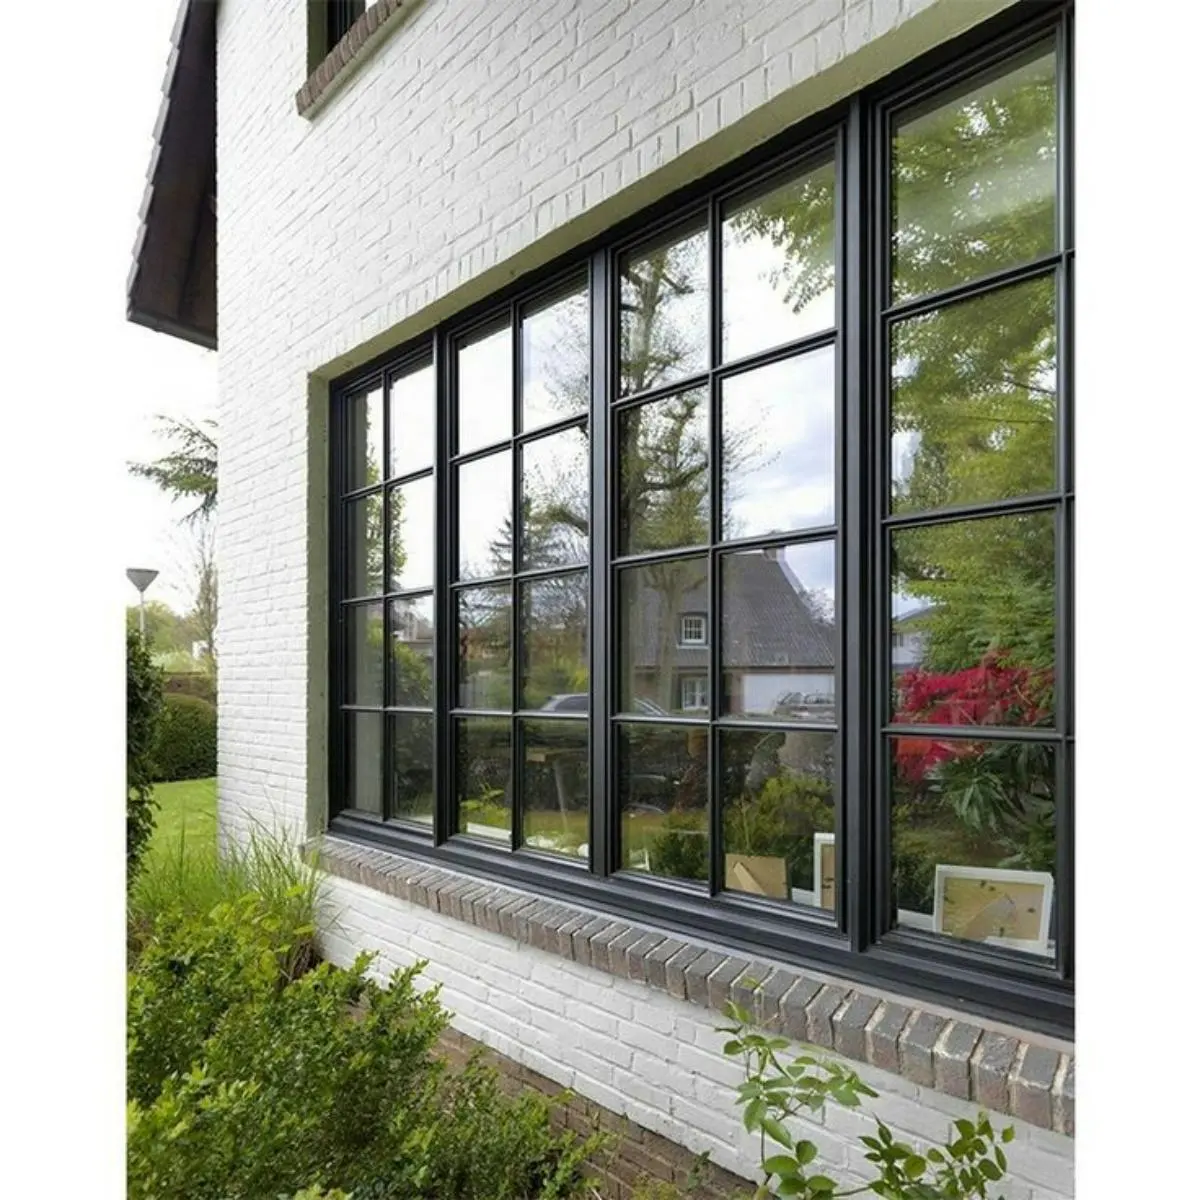 پنجره دو جداره مشکی در ترکیب با دیوارهای آجری سفید بیرون از خانه